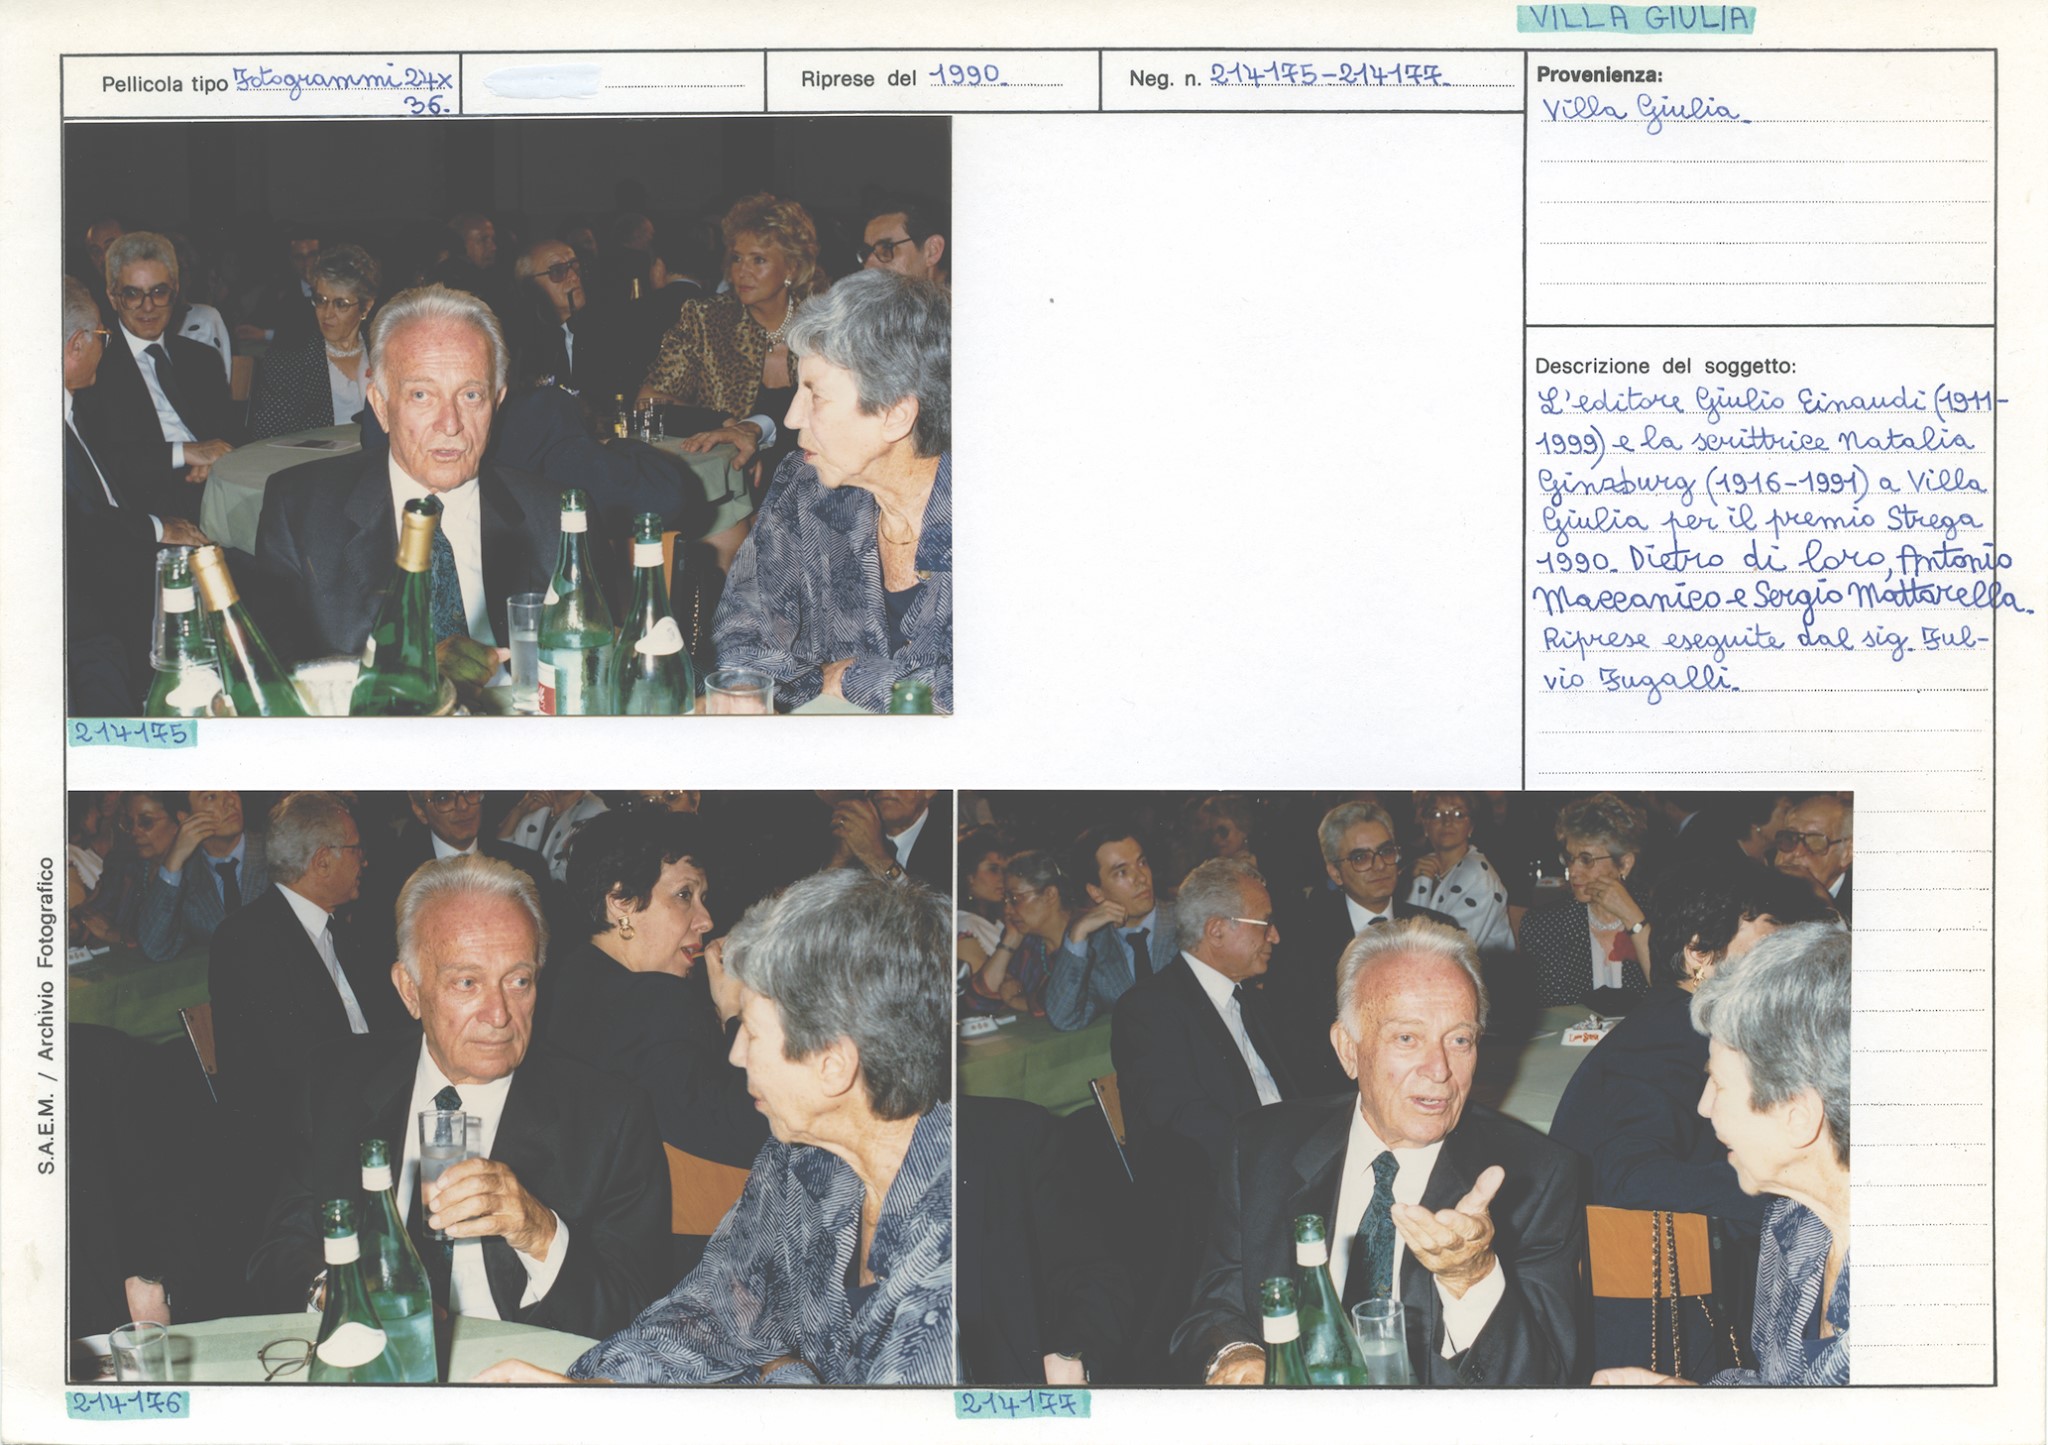 Premio Strega, 1990, Natalia Ginzburg e Giulio Einaudi. Archivio fotografico di Villa Giulia. Inv. 214175-214177